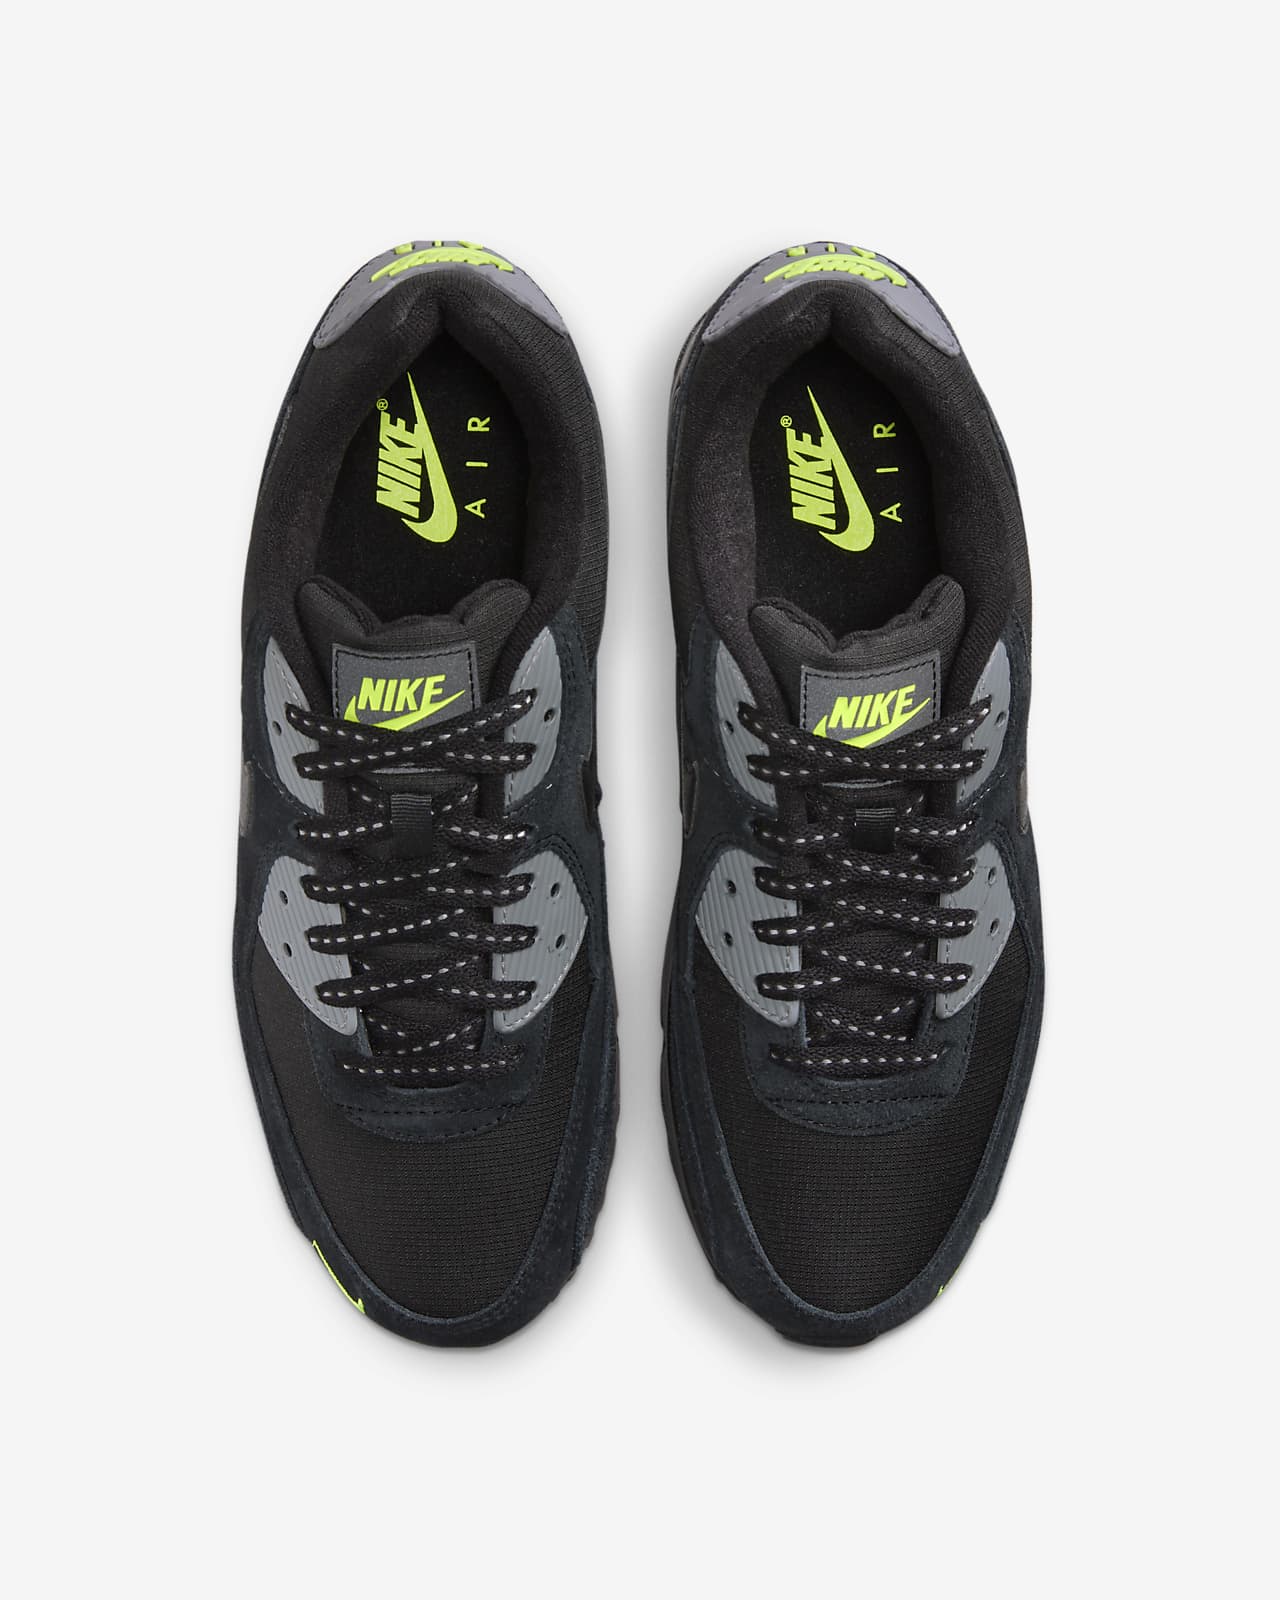 Nike Men's Air Max 90 Shoes